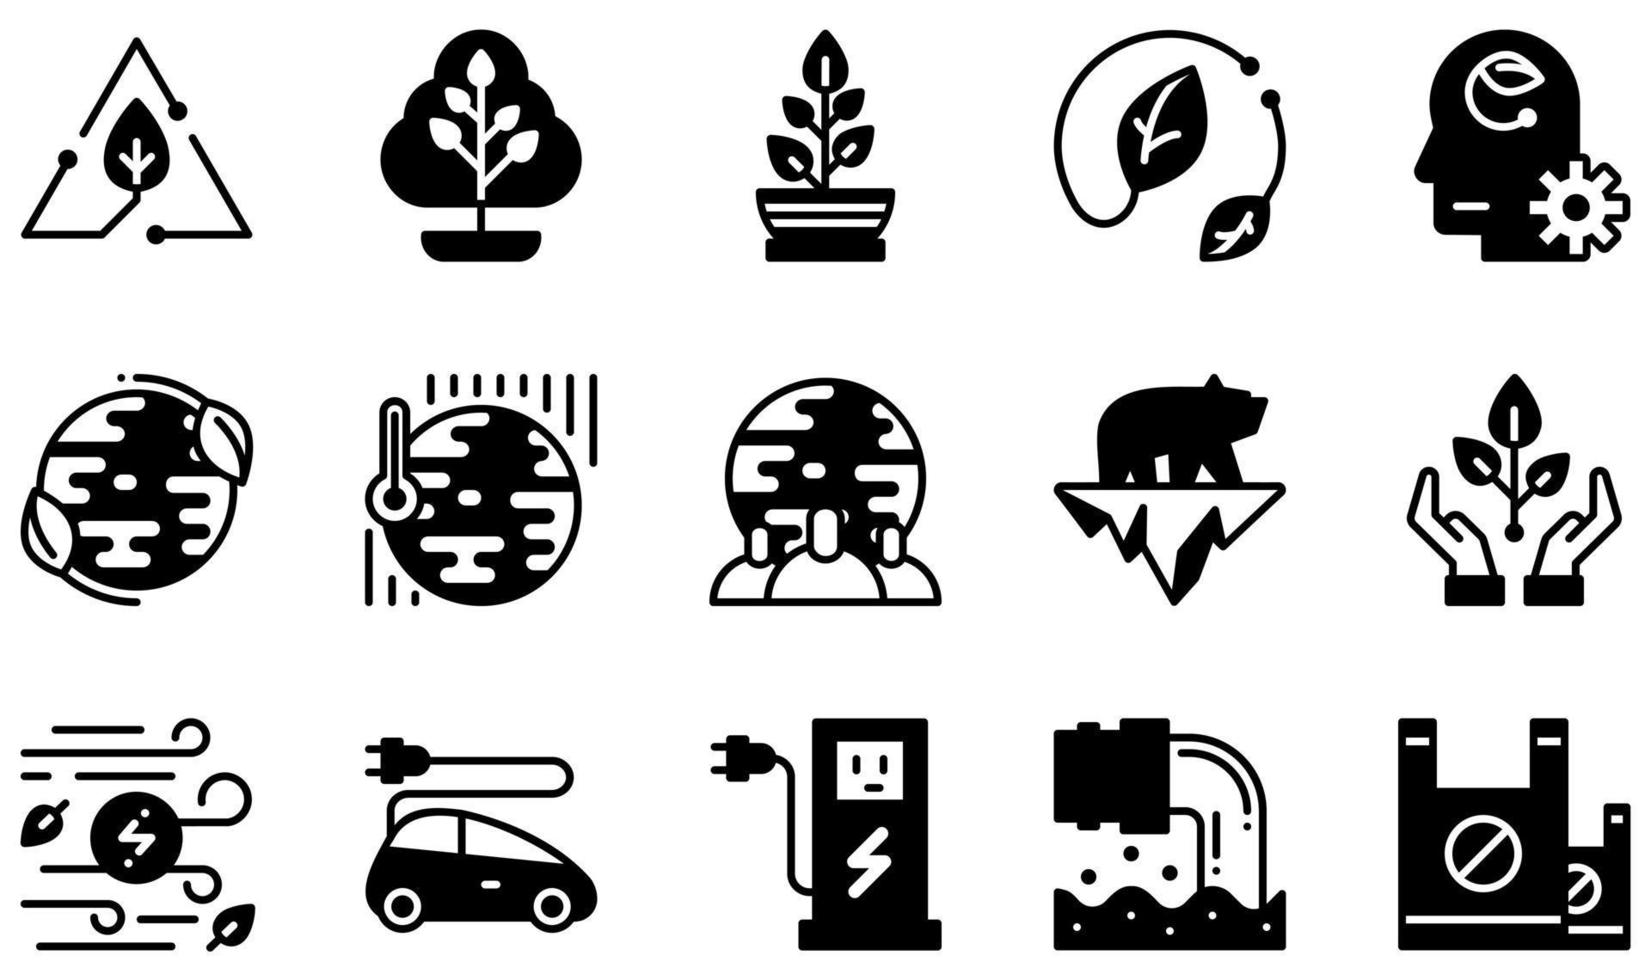 conjunto de ícones vetoriais relacionados à ecologia. contém ícones como reciclar, árvore, planta, folha, mente ecológica, ecologia mundial e muito mais. vetor